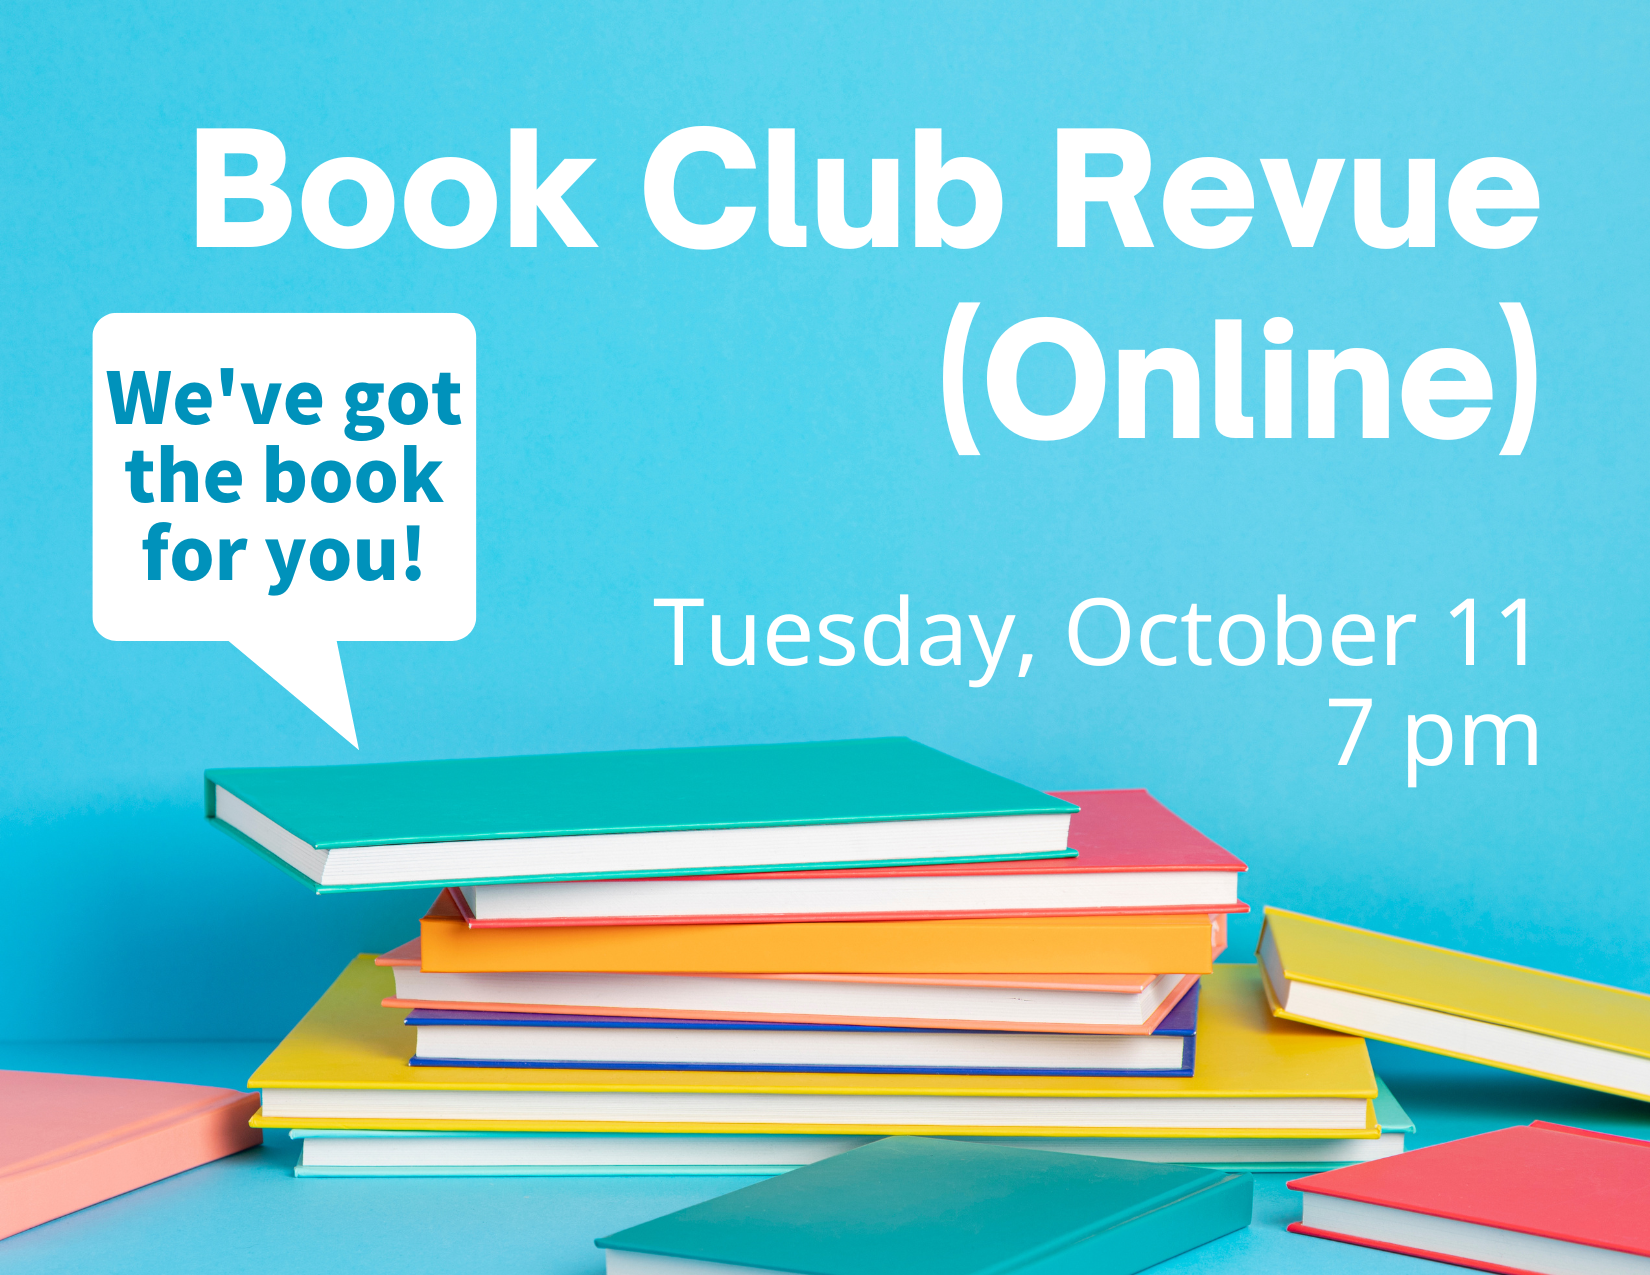 Book Club Revue Online Logo